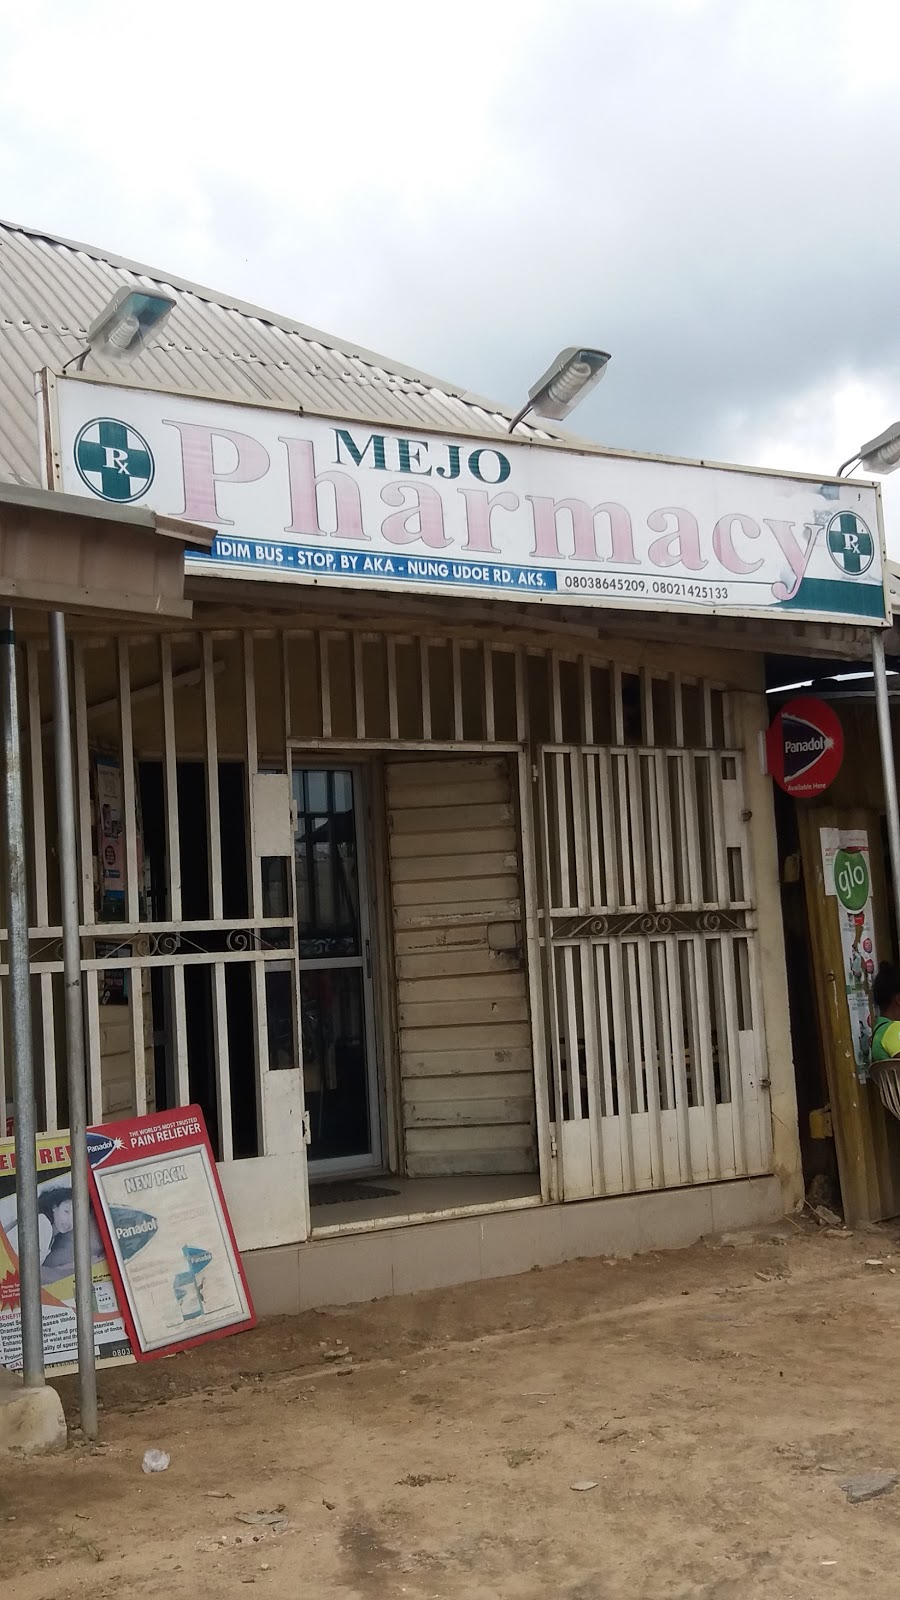 Mejo Pharmacy